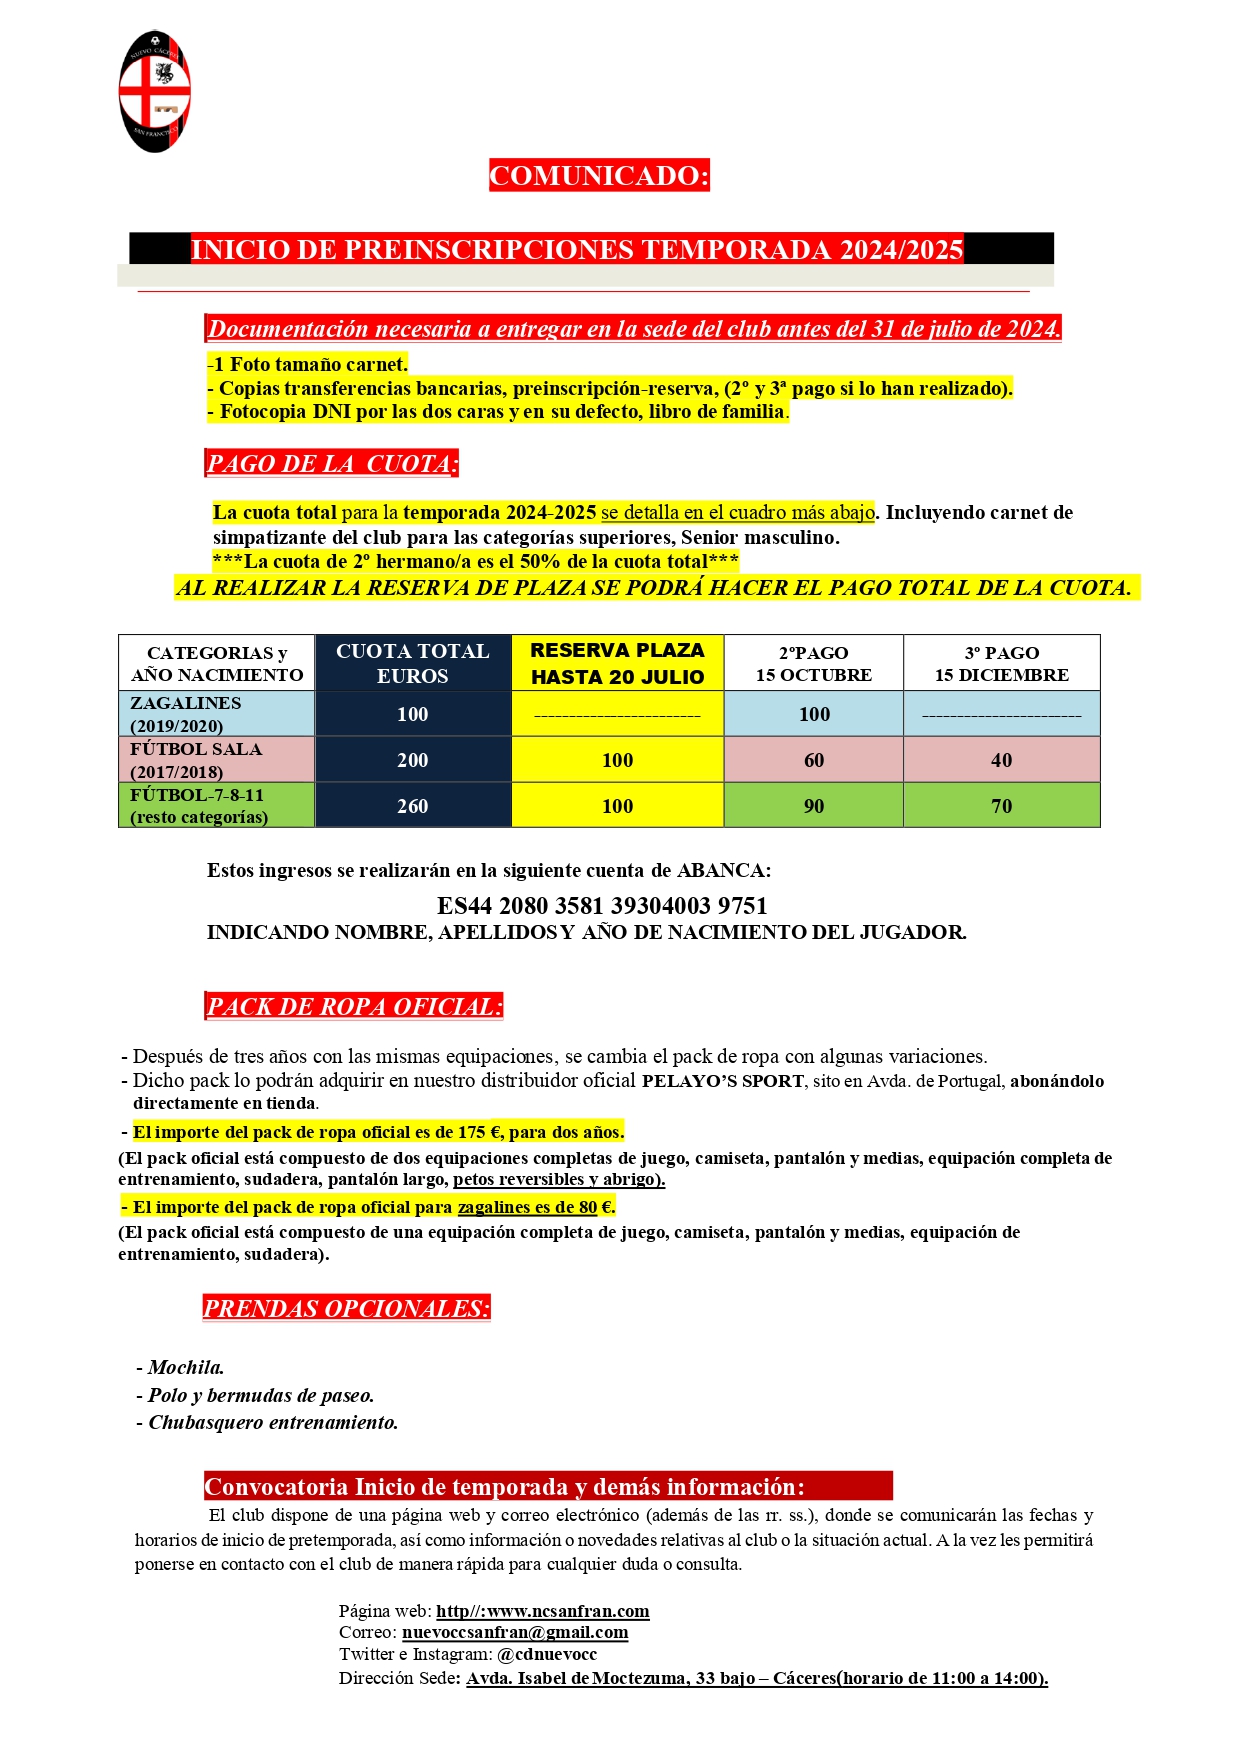 CUOTA Y PACK DE ROPA PARA LA TEMPORADA 2024-2025